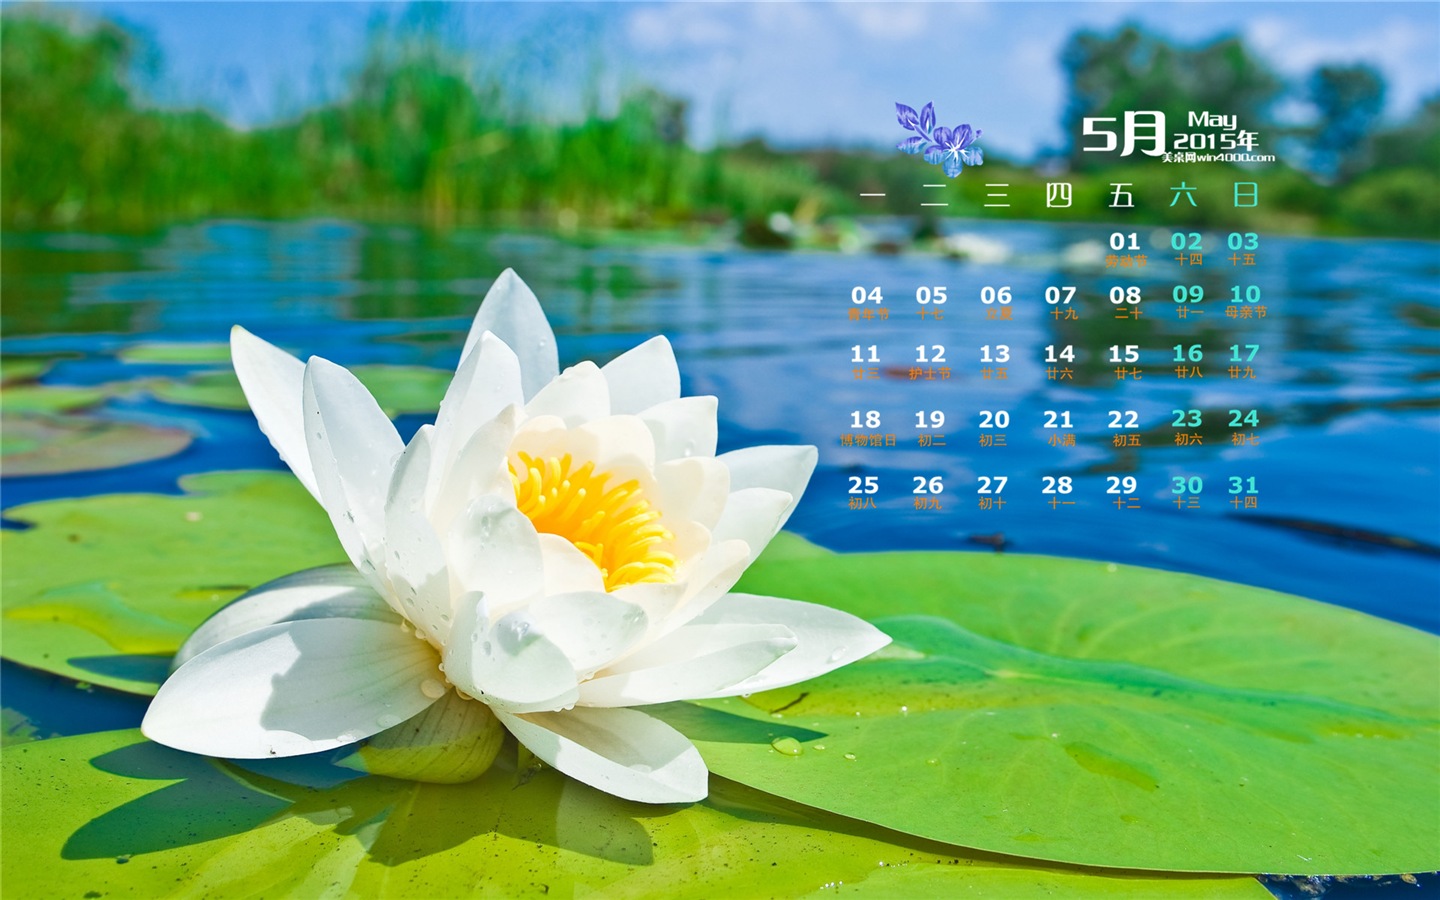 Май 2015 календарный обои (2) #4 - 1440x900